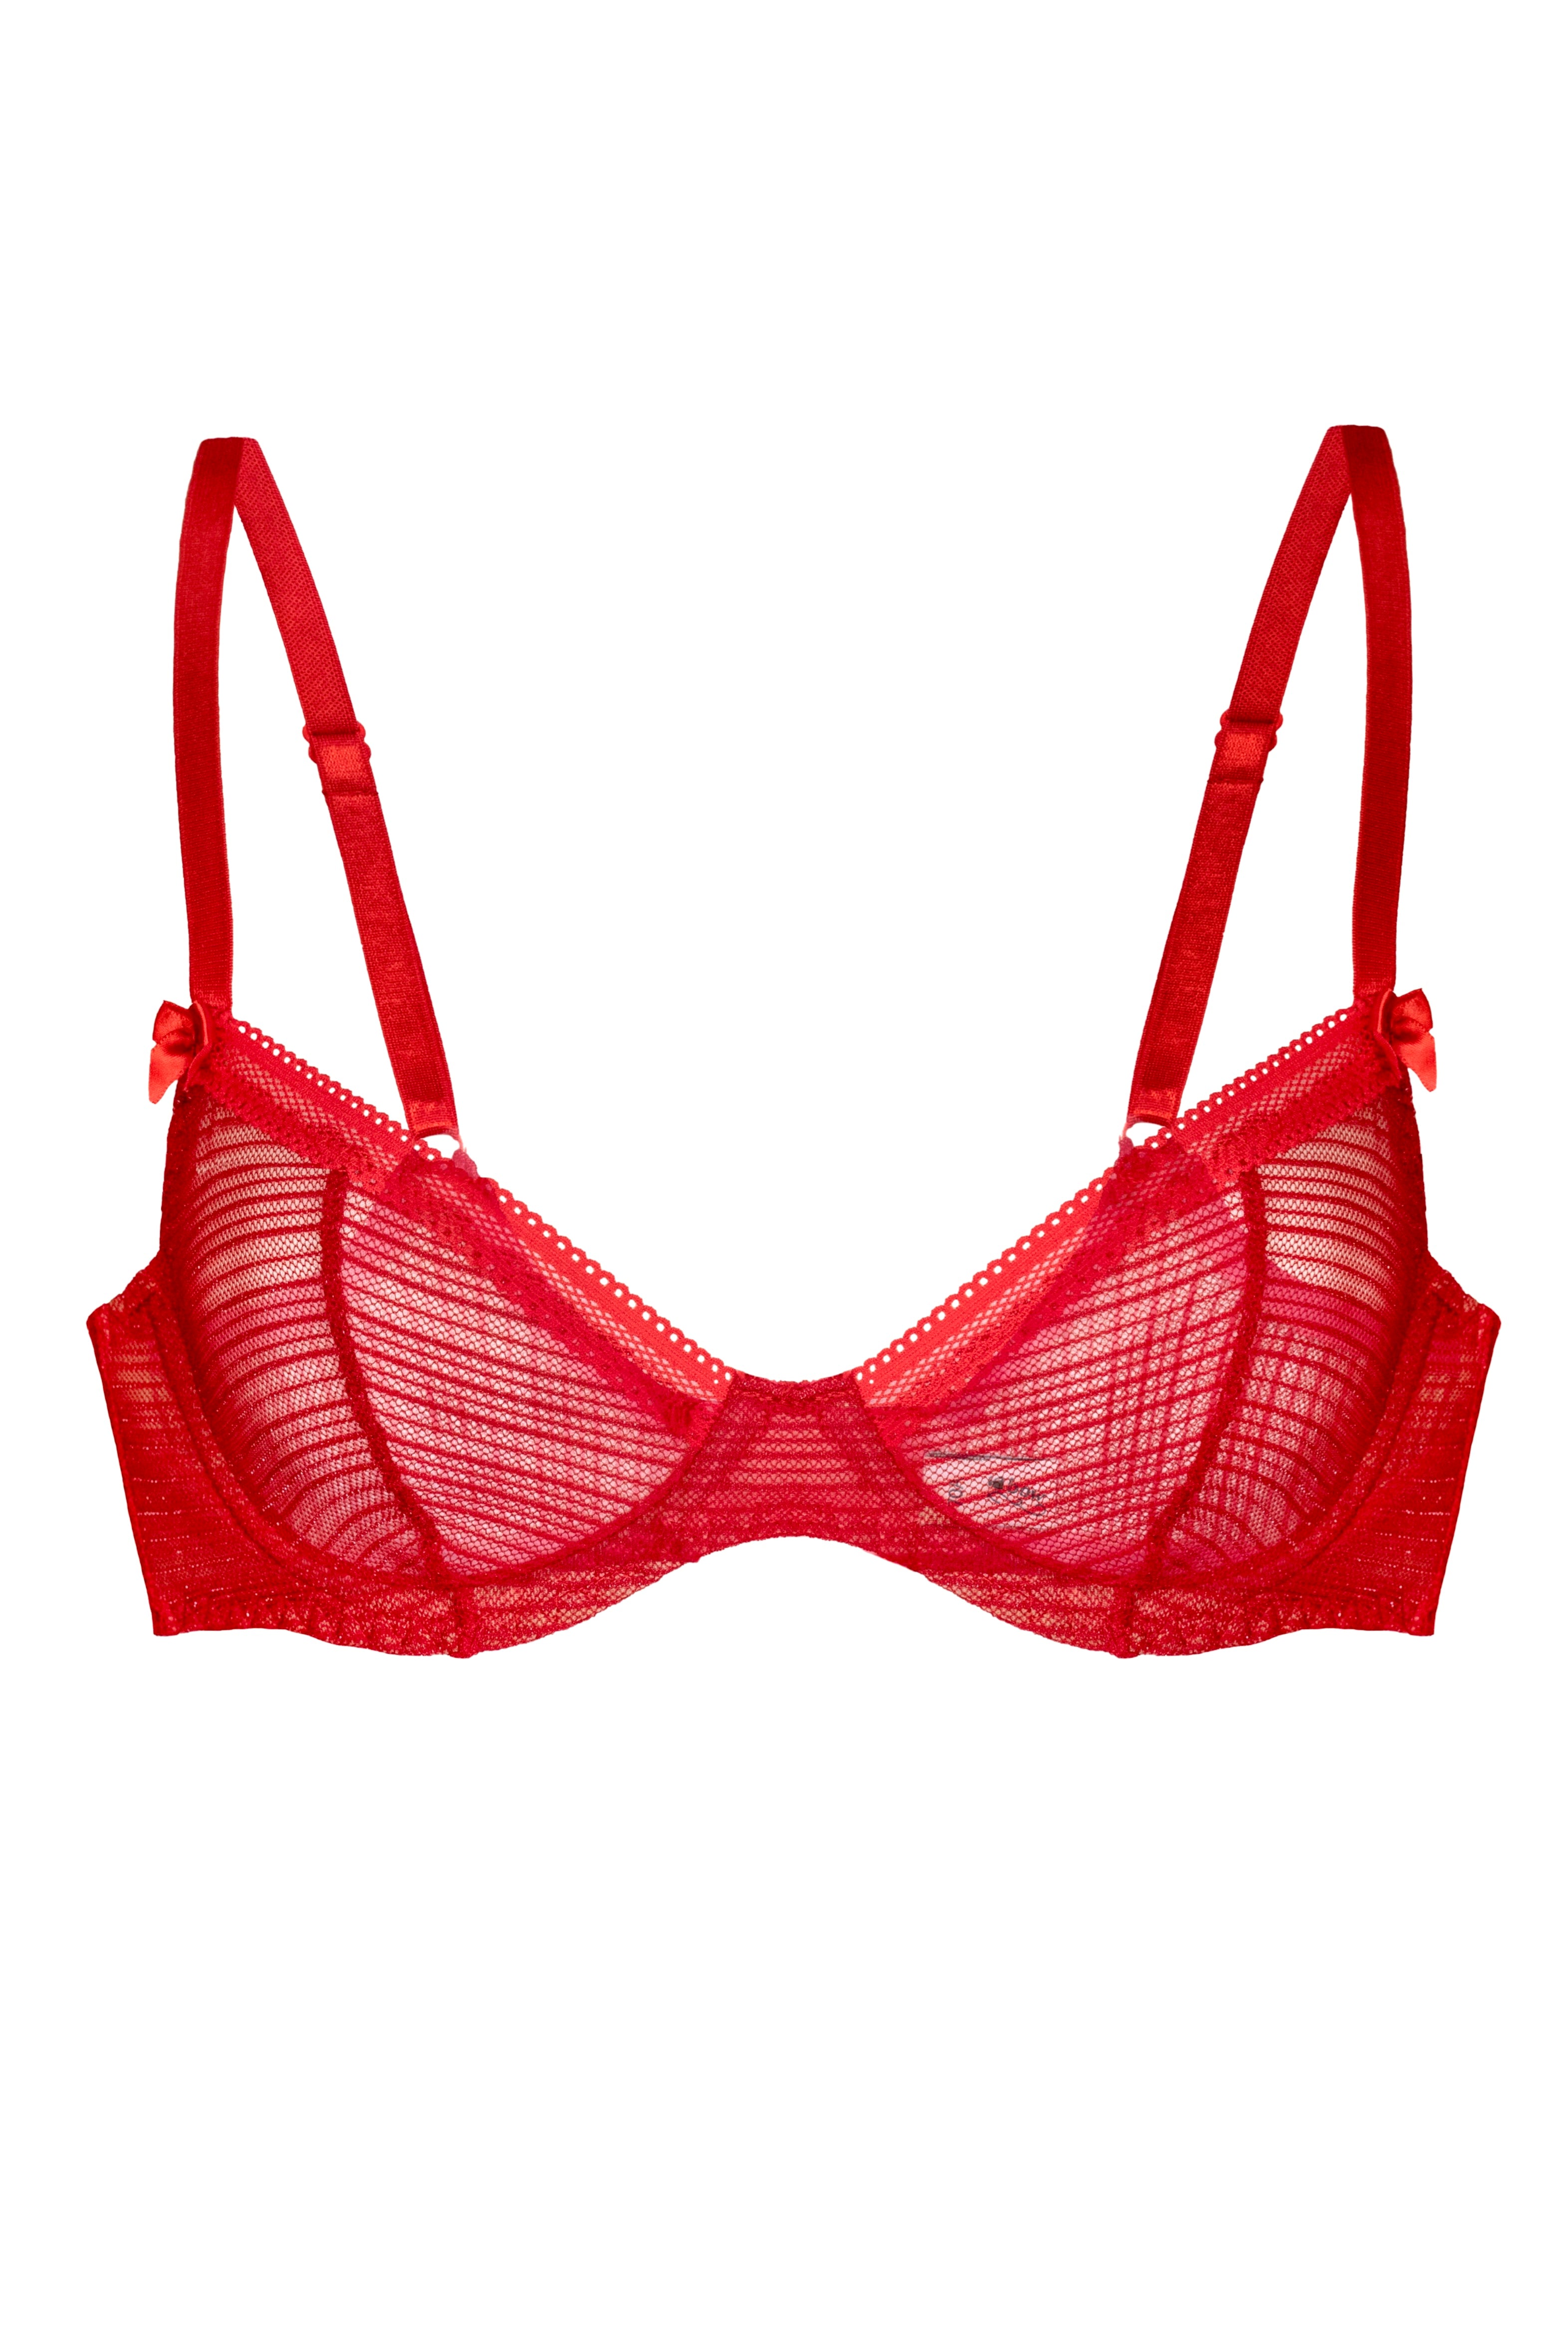 Lessie Red bra